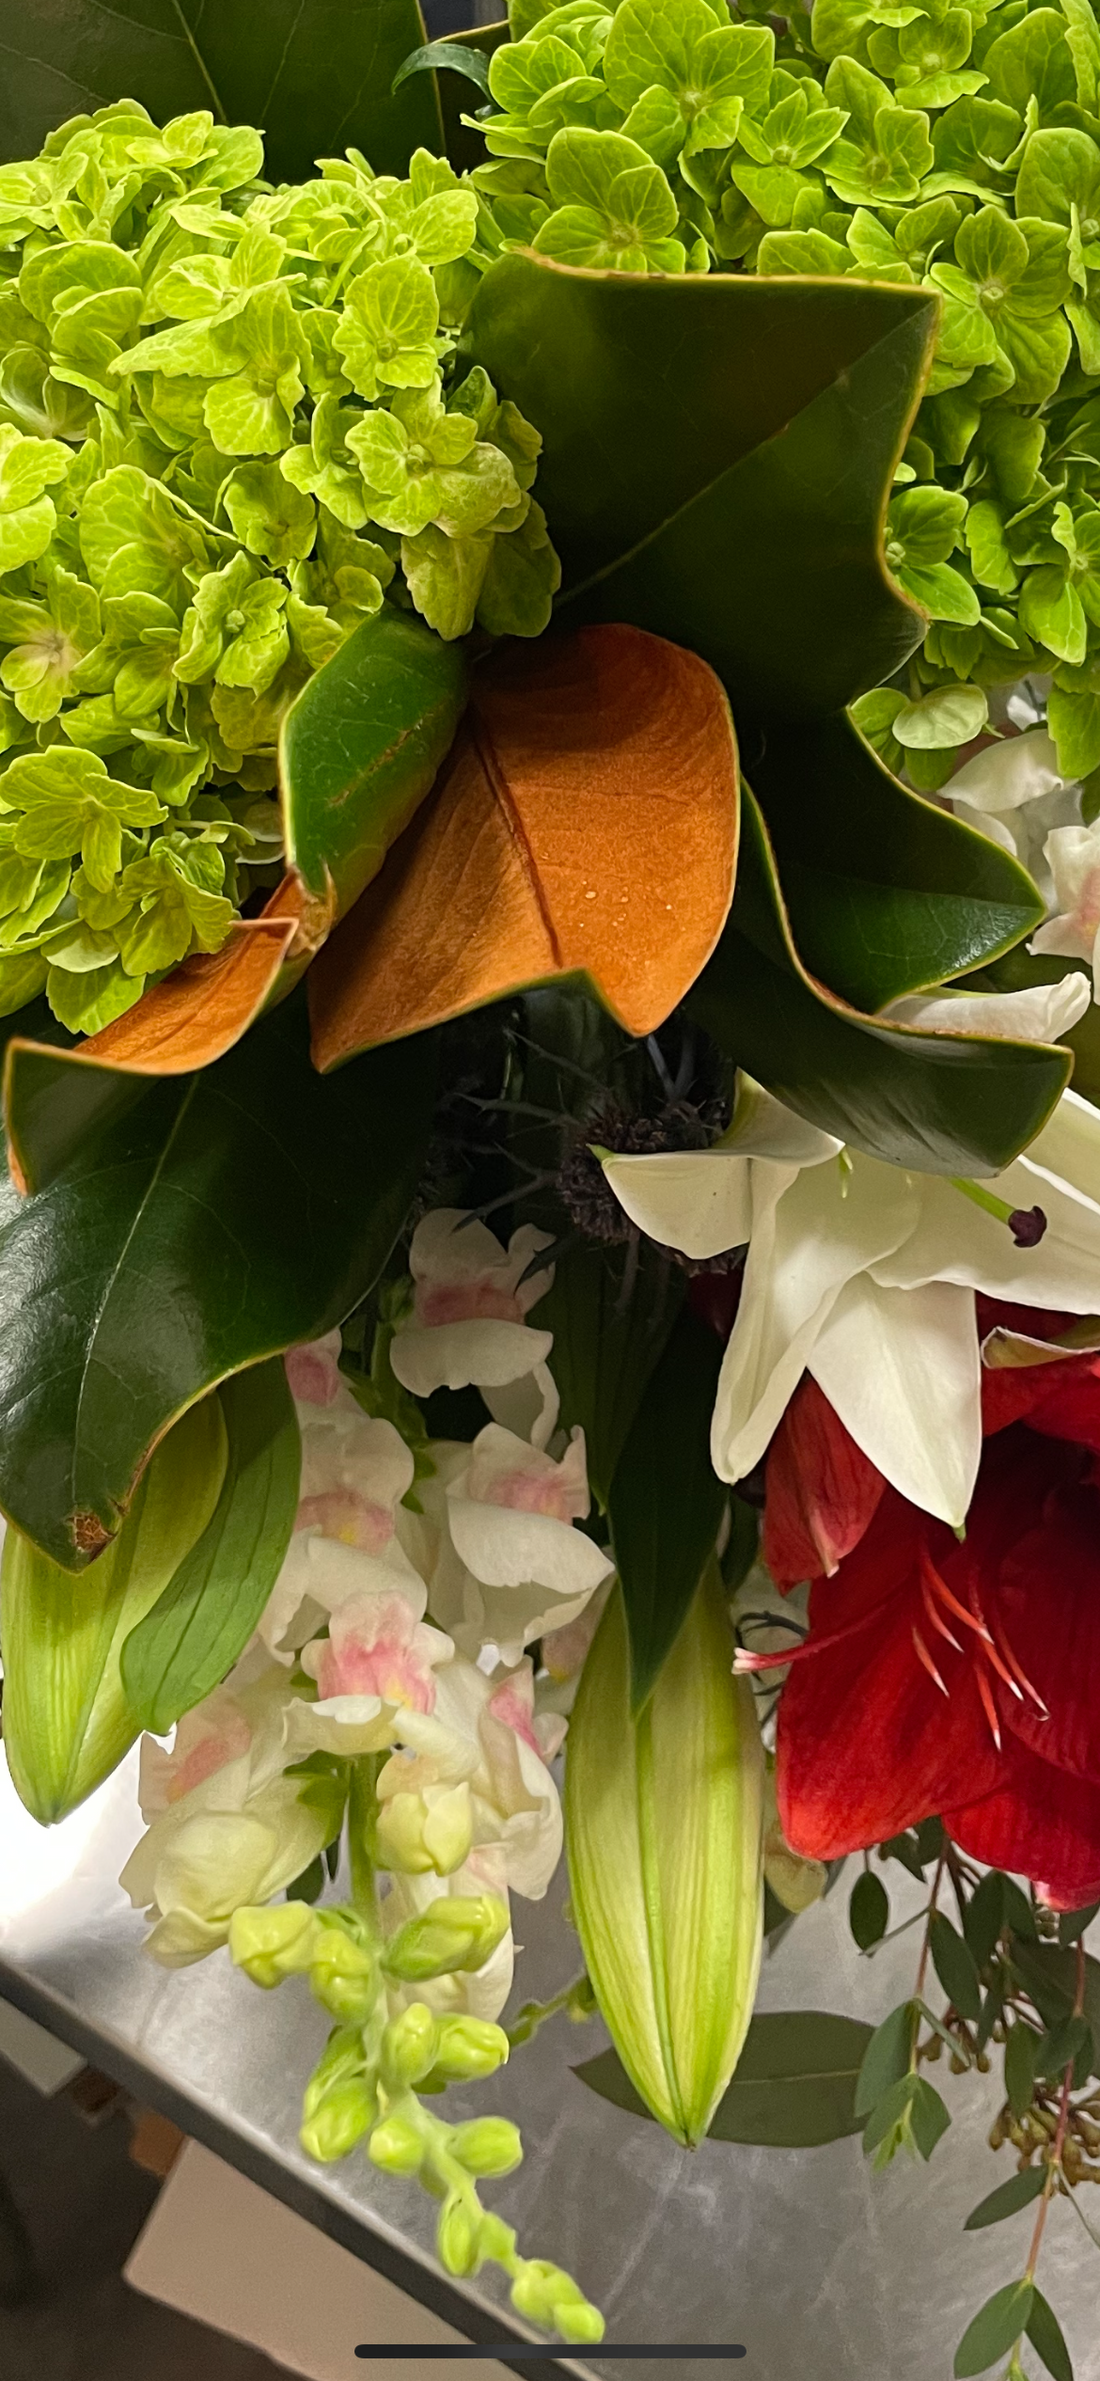 Luxury Seasonal Cut Flowers by Designer